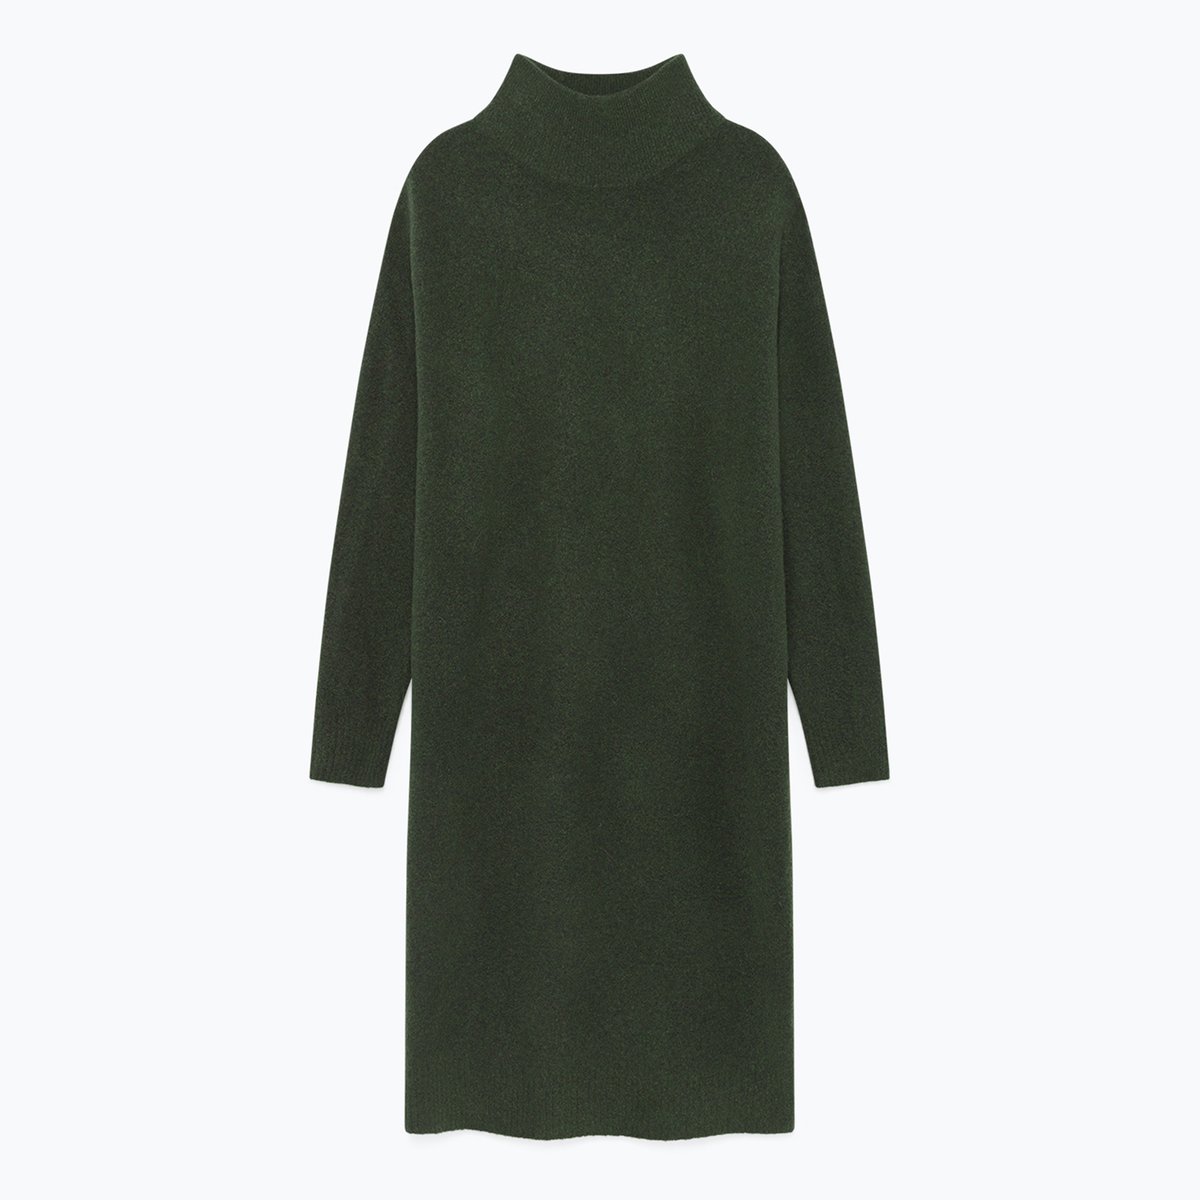 Платье-пуловер La Redoute Длинное с длинными рукавами DAMSVILLE XS/S зеленый, размер XS/S Длинное с длинными рукавами DAMSVILLE XS/S зеленый - фото 5